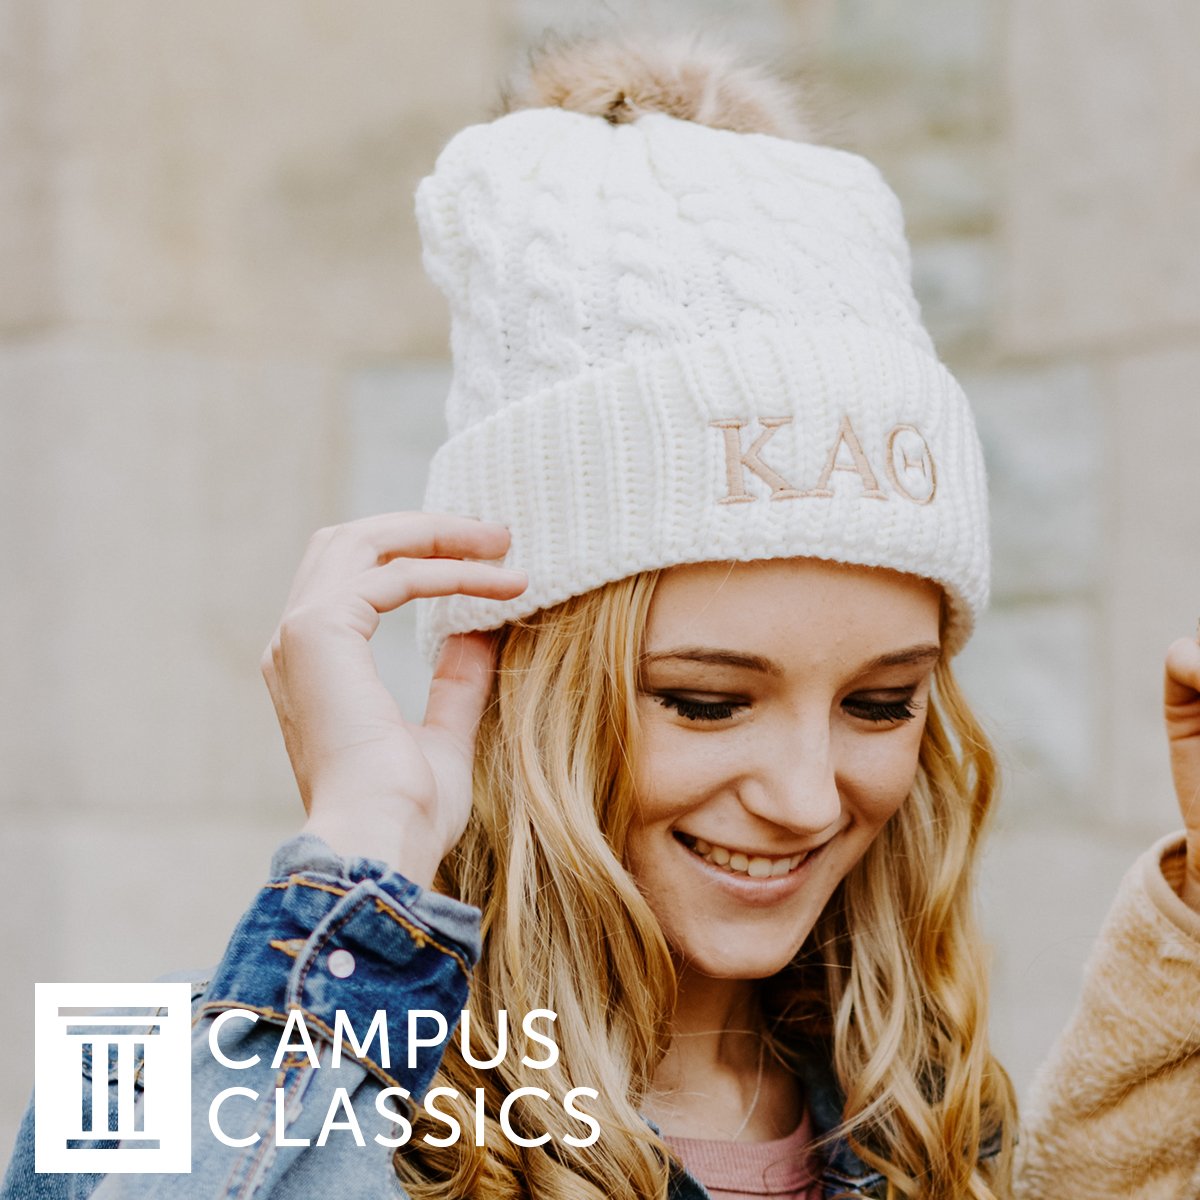 Kappa Fur Pom Beanie | Kappa Kappa Gamma | Headwear > Beanies